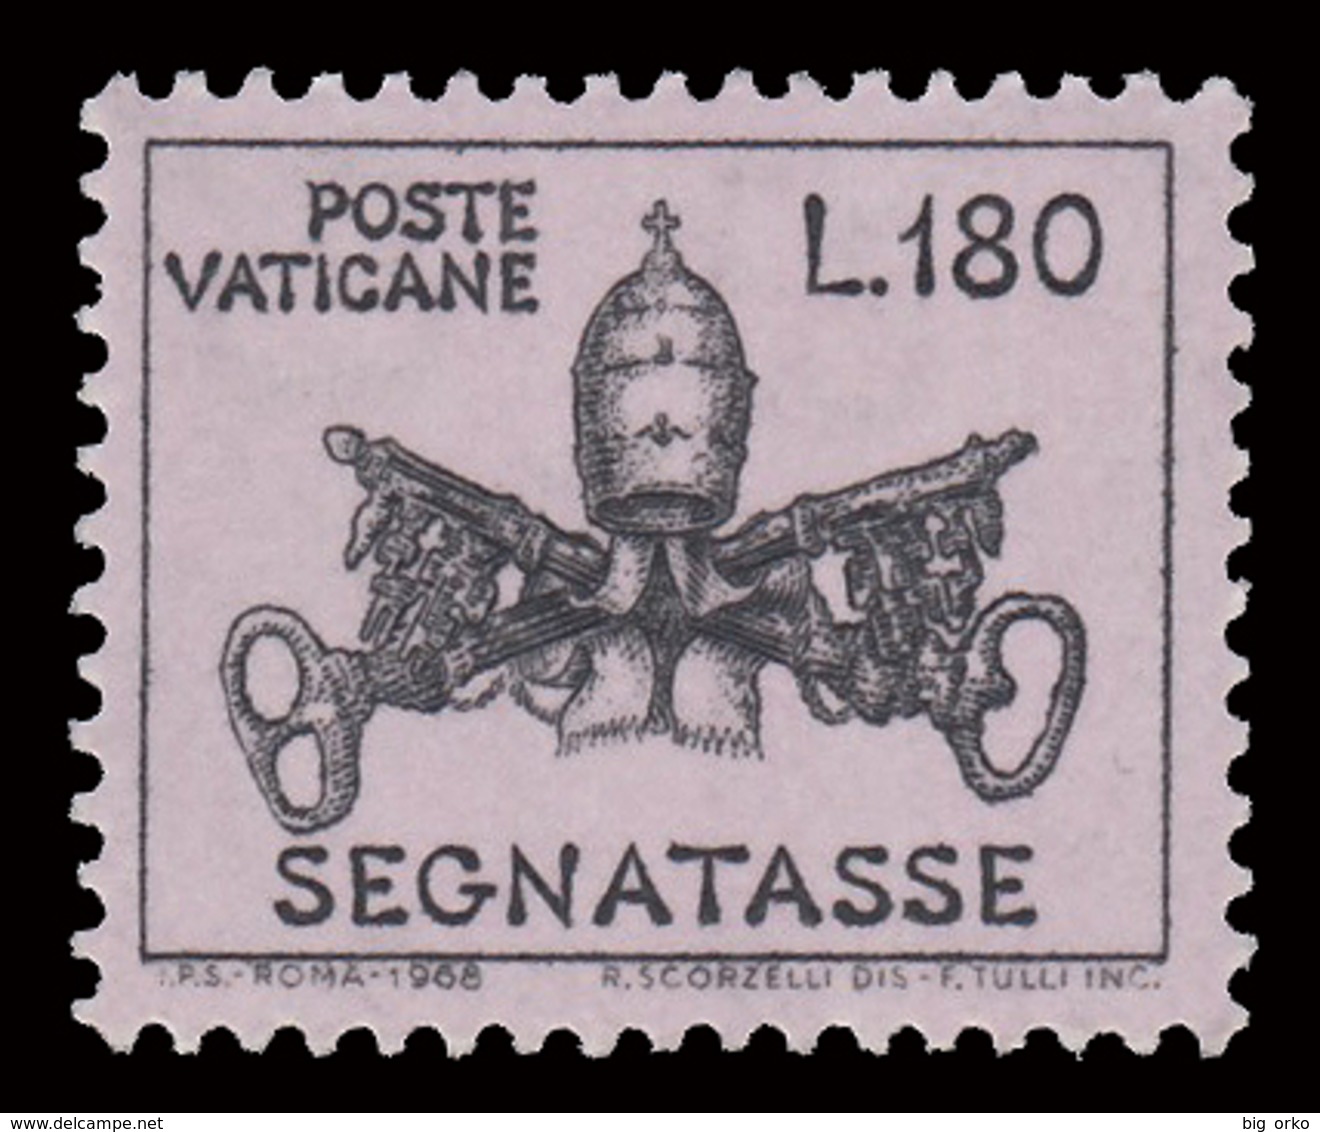 SEGNATASSE Vaticano - PONTIFICATO PAOLO VI - Triregno E Chiavi Decussate - Lire 180 Malva Chiaro - 1968 - Taxes